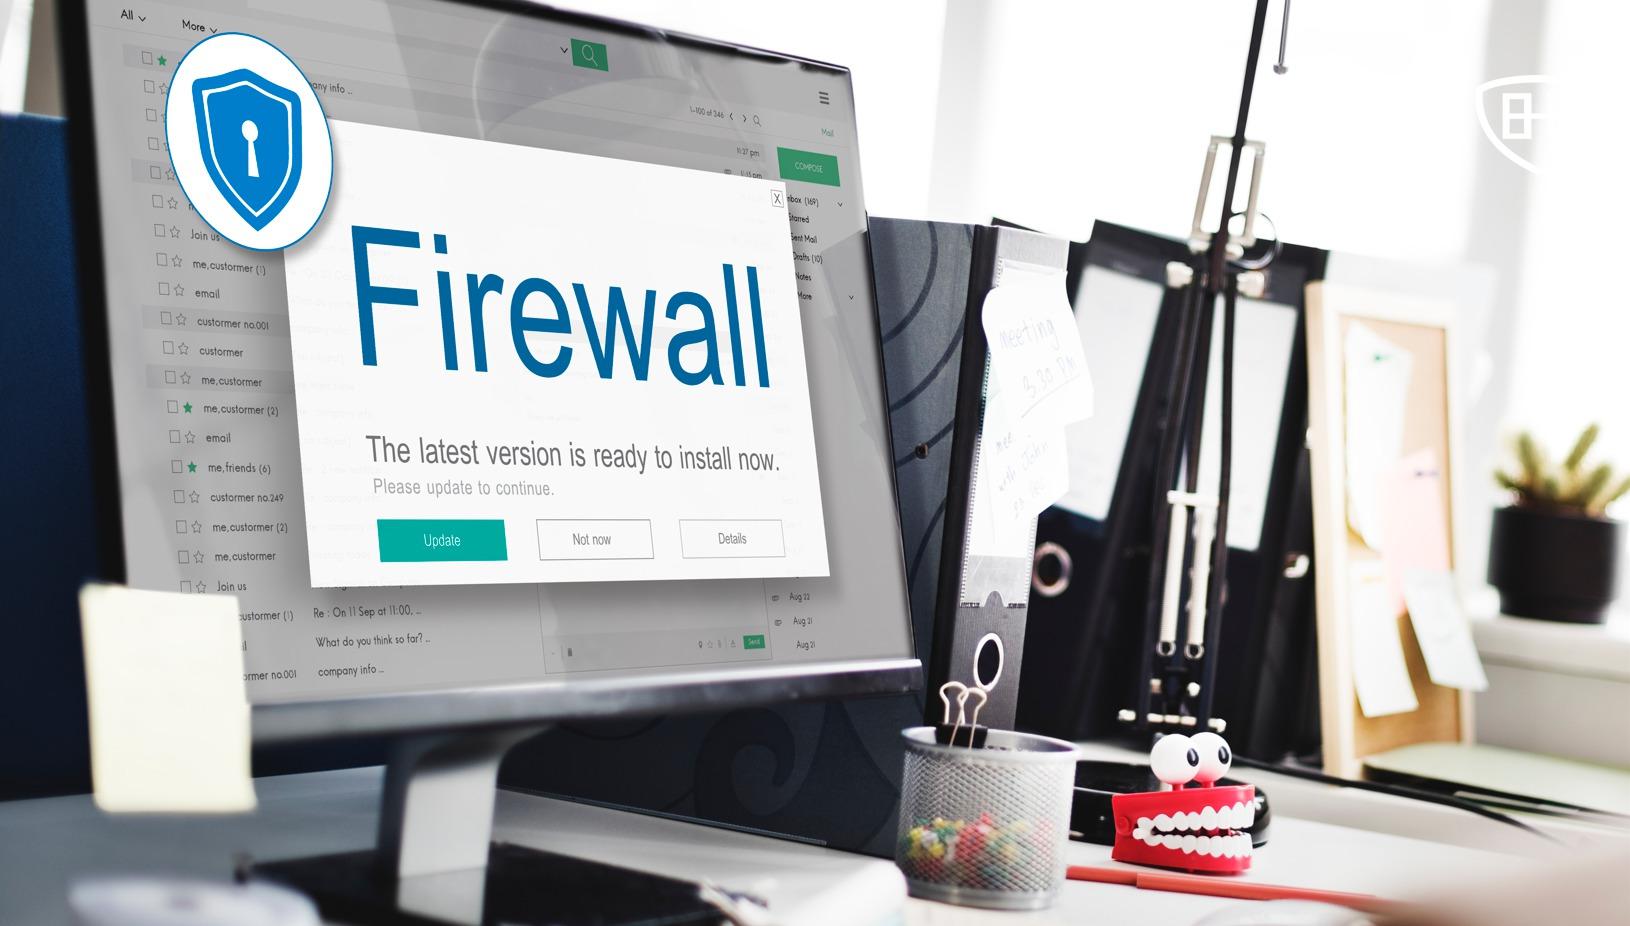 Firewalls de Palo Alto Networks bajo ataque, ¡se avecinan revisiones!